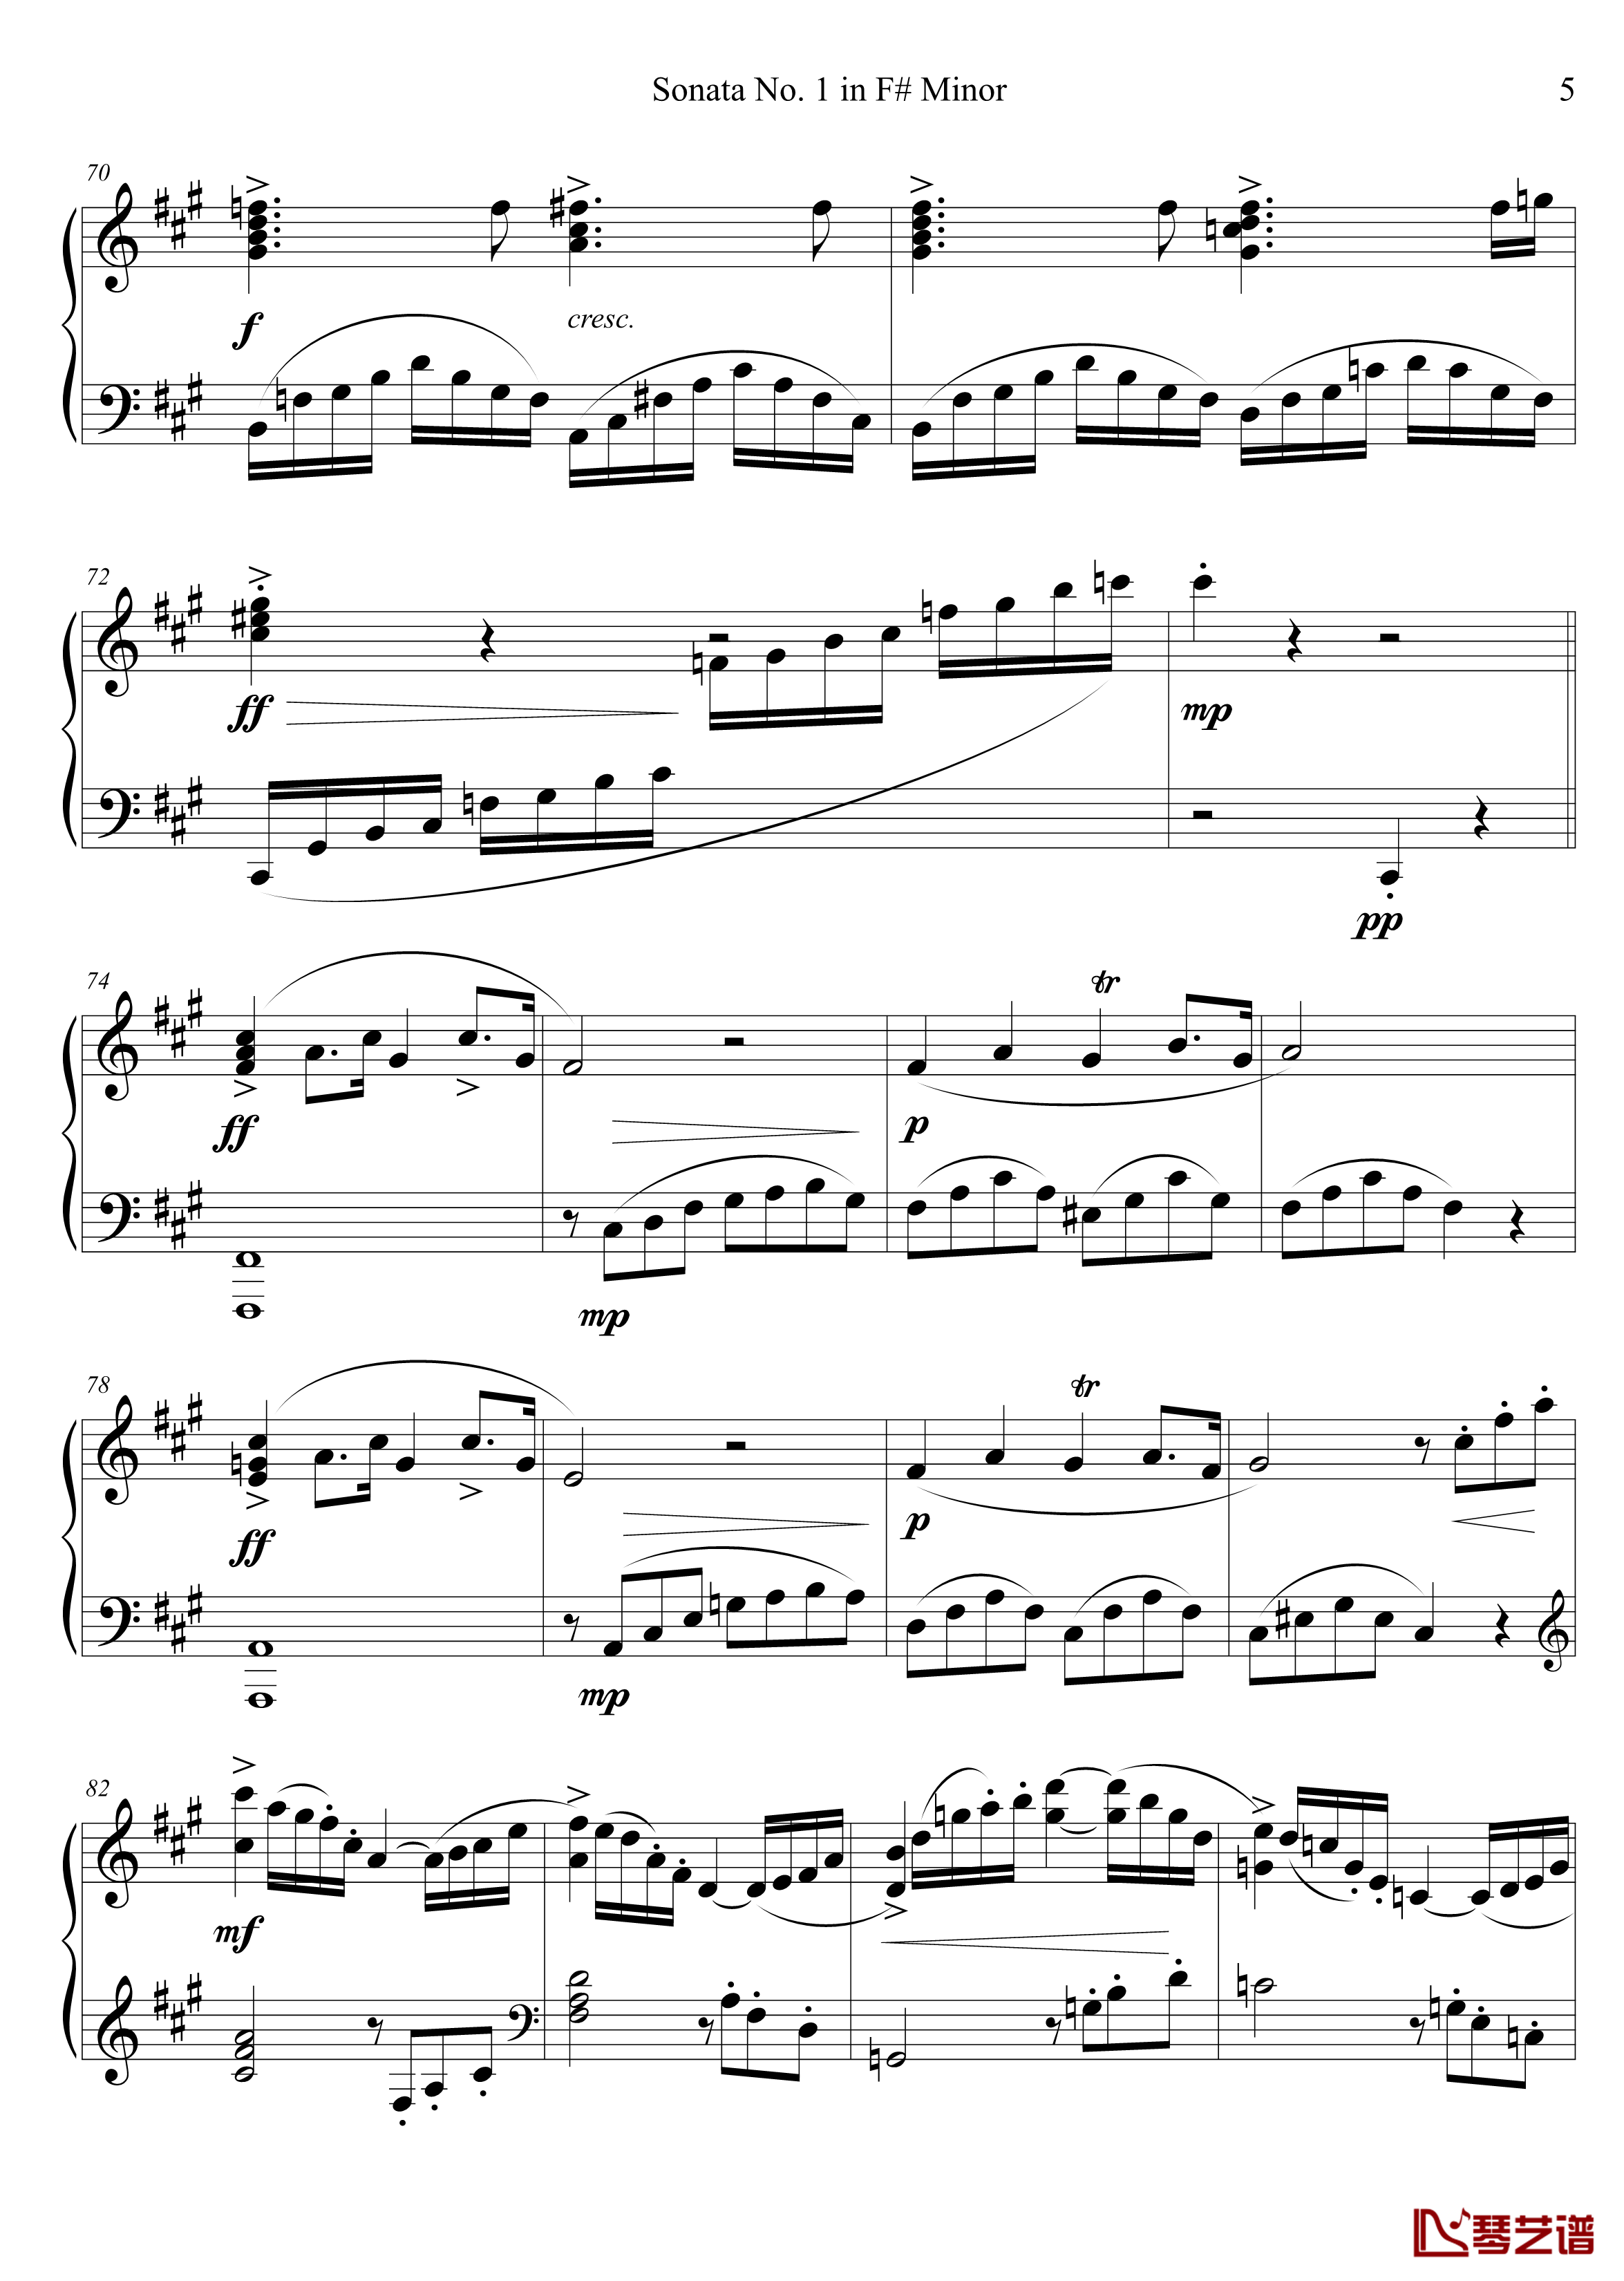 钢琴奏鸣曲No. 1钢琴谱 第一乐章-千古留名5